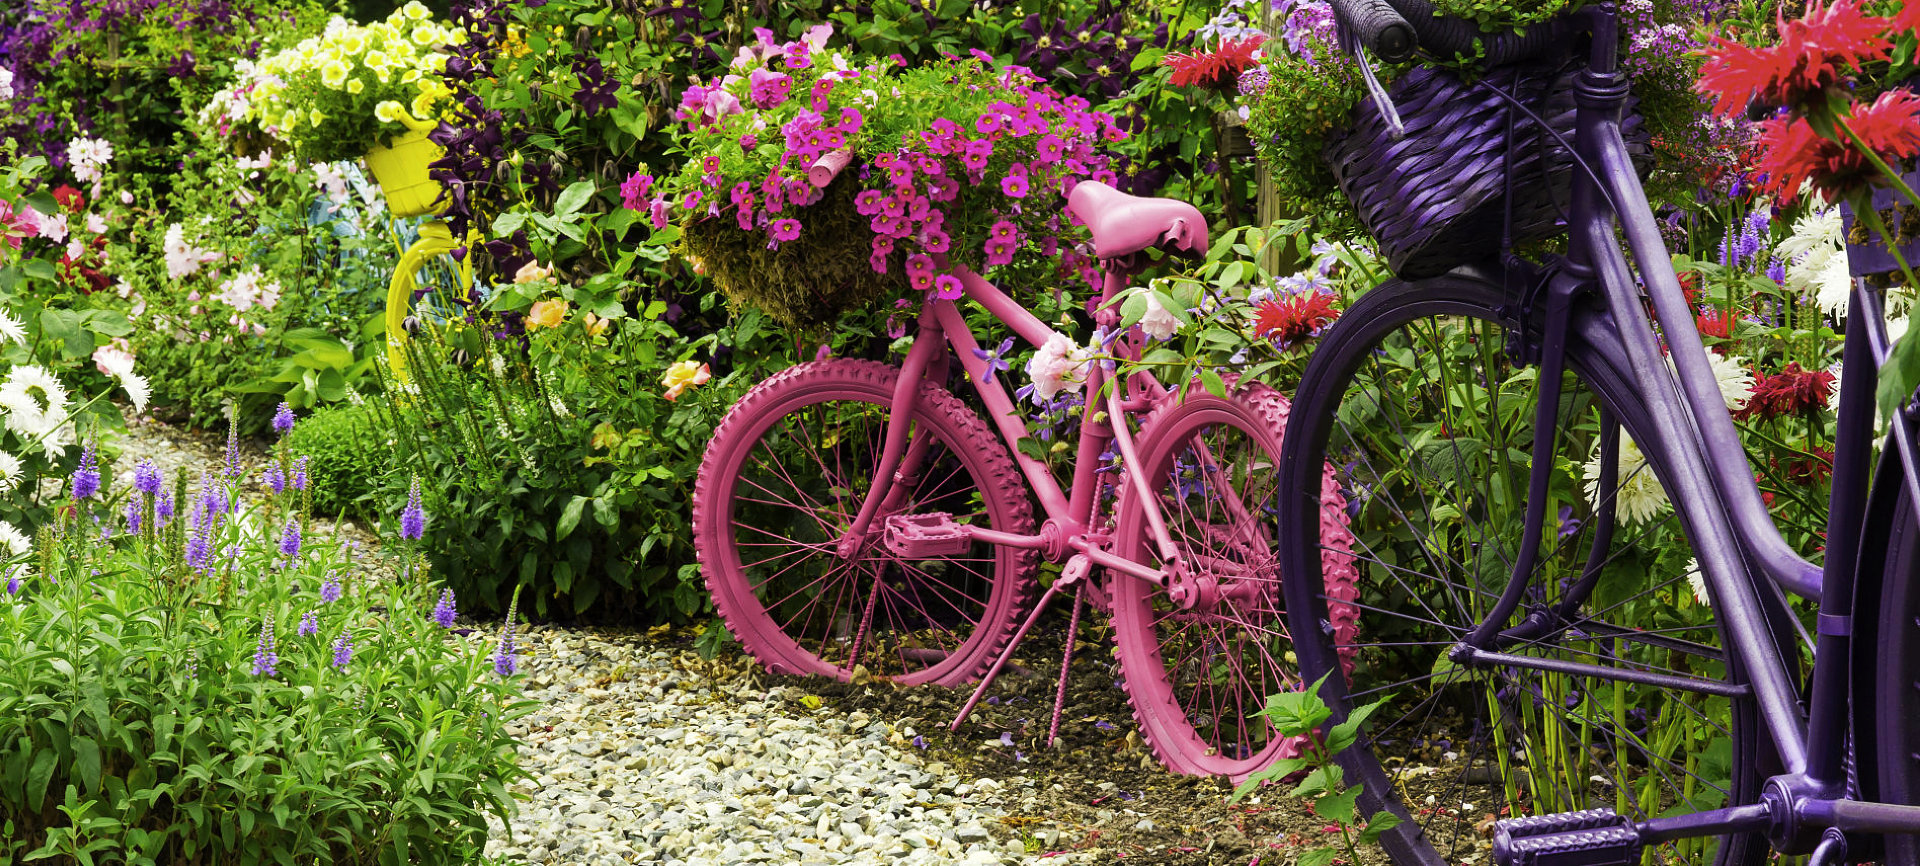 bike sculptor on a garden